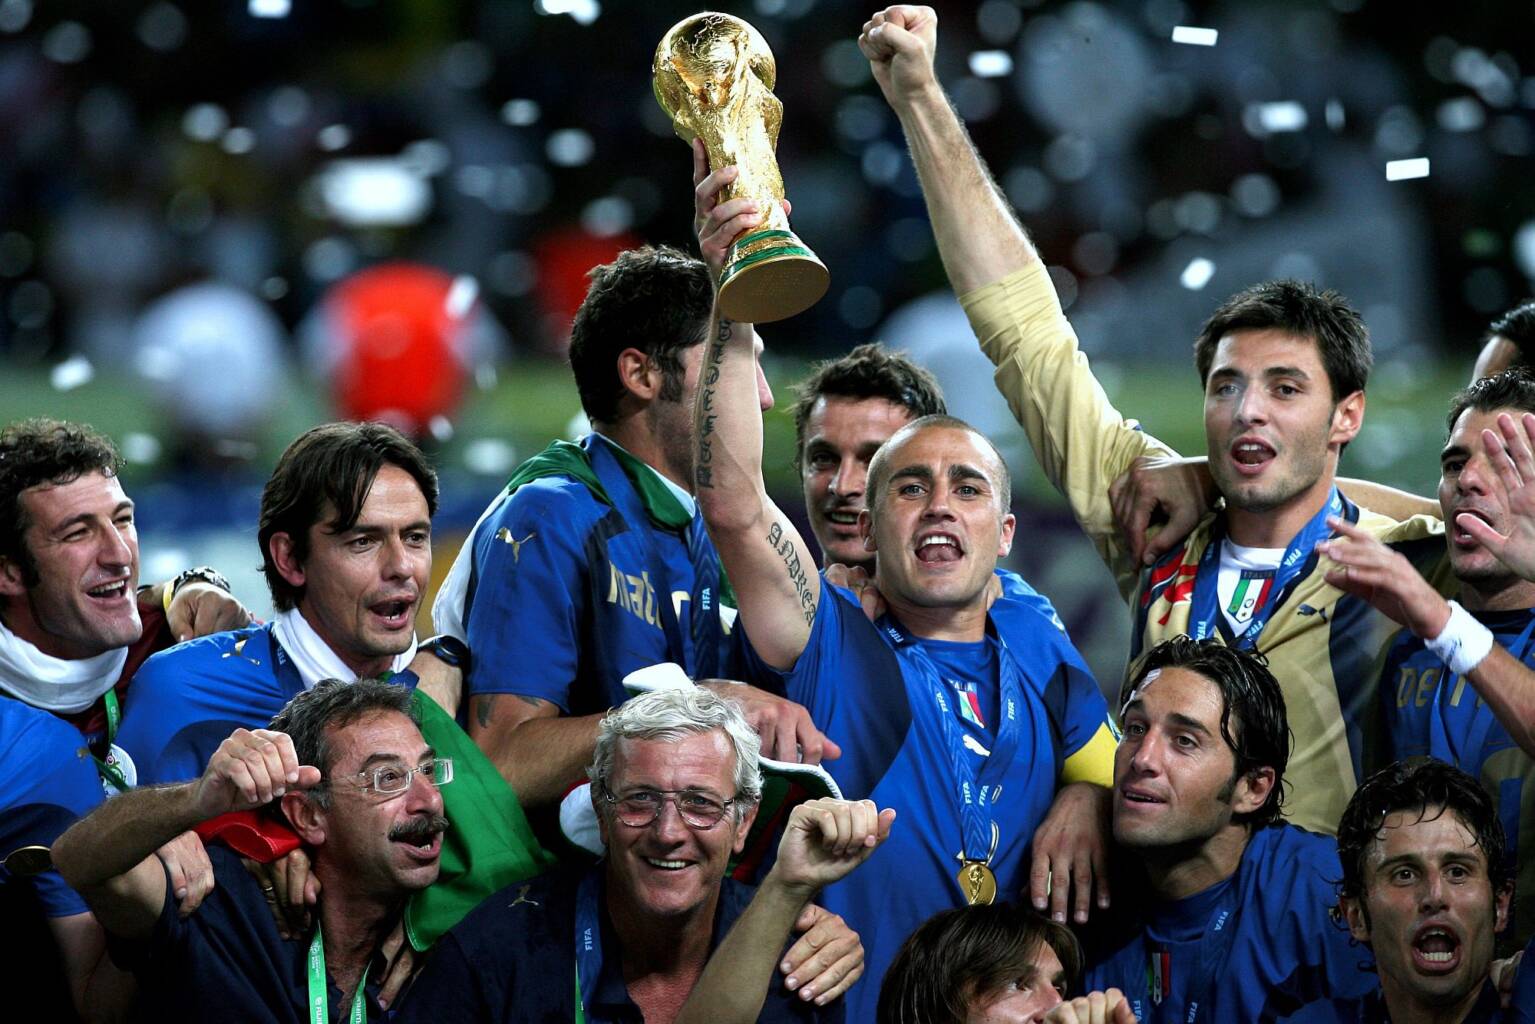 Italia Campione del Mondo 2006